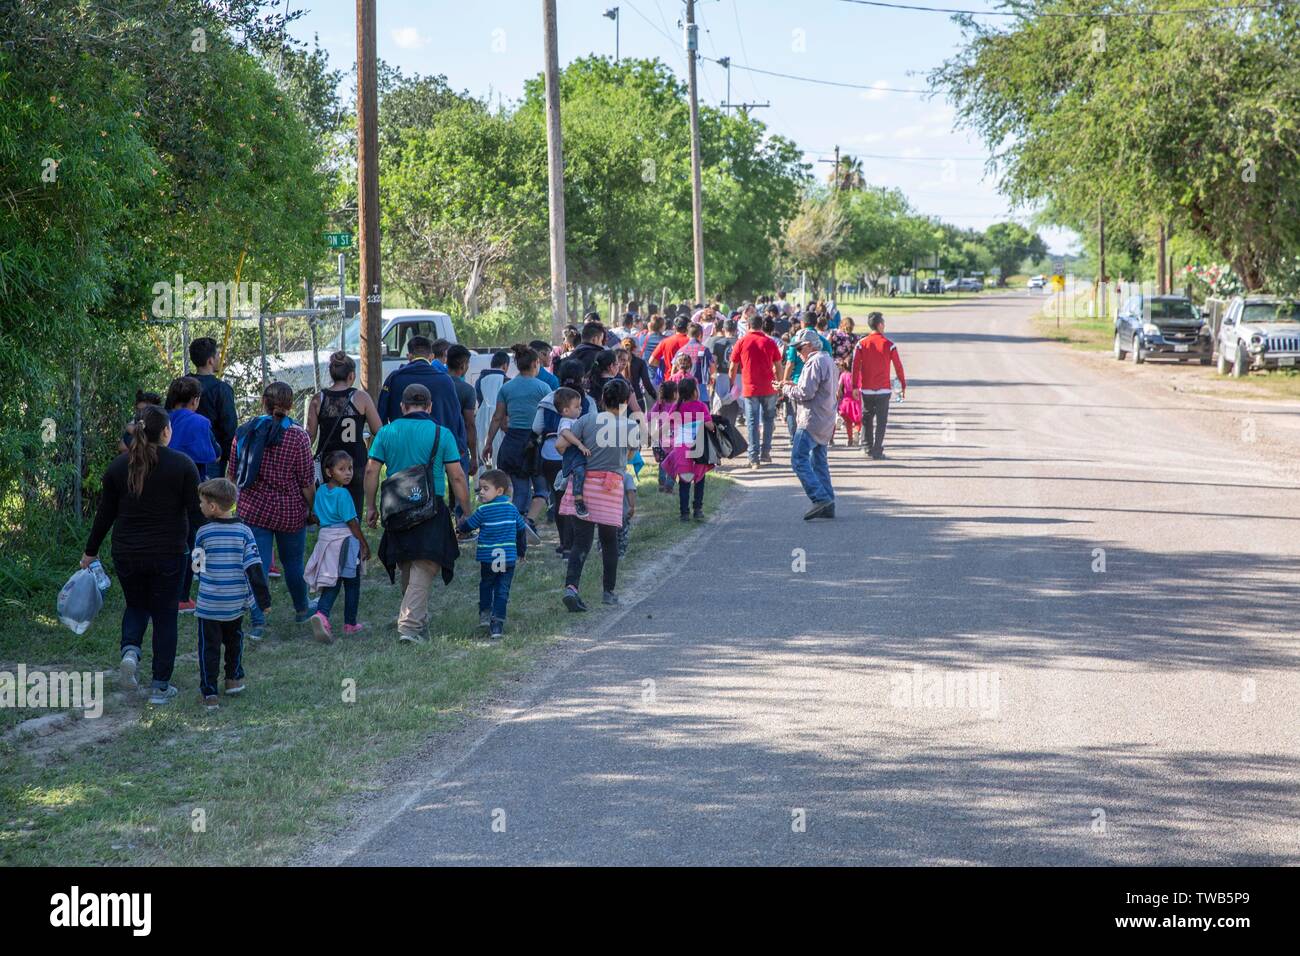 Un numeroso grupo de migrantes centroamericanos que buscan asilo, caminar hacia la ciudad a entregarse a la oficina de aduanas y la Patrulla Fronteriza el 15 de junio de 2019 en Los Ebanos, Texas. El grupo asciende a más de 100 familias, voluntariamente se entregaron a la Patrulla Fronteriza, después de cruzar la frontera ilegalmente con la esperanza de obtener asilo. Foto de stock